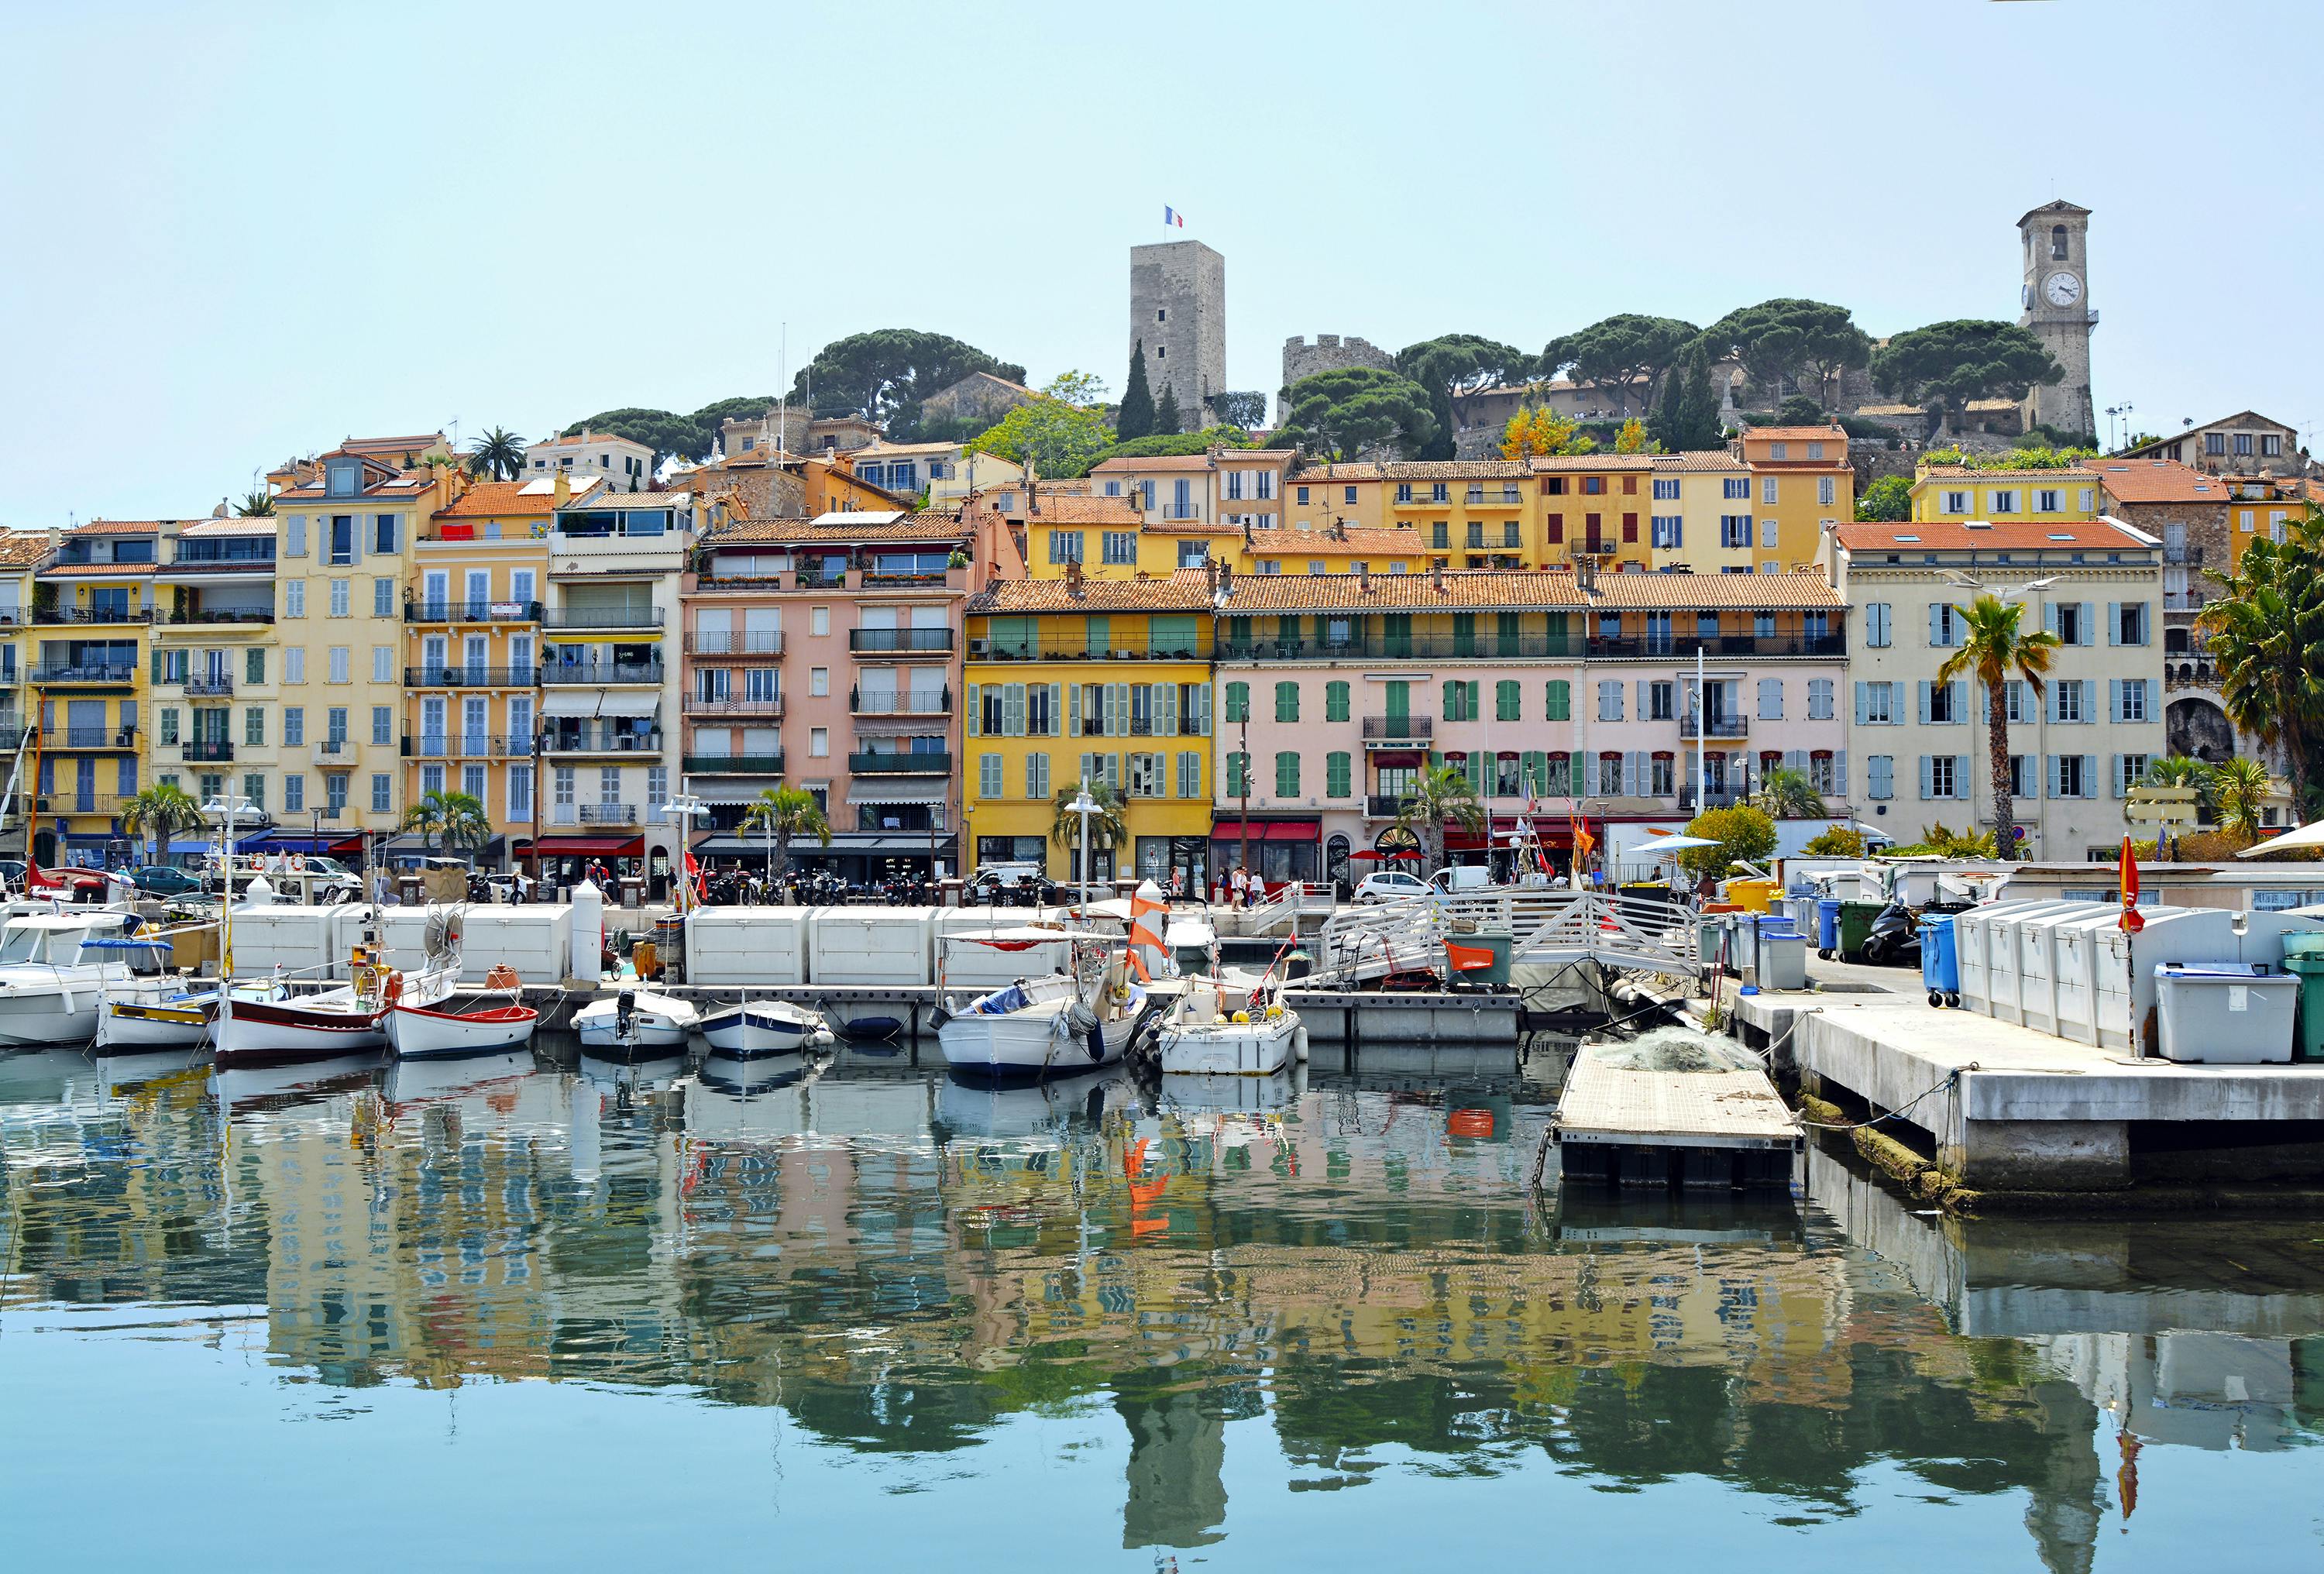 Private Besichtigungstour an der Riviera ab Cannes